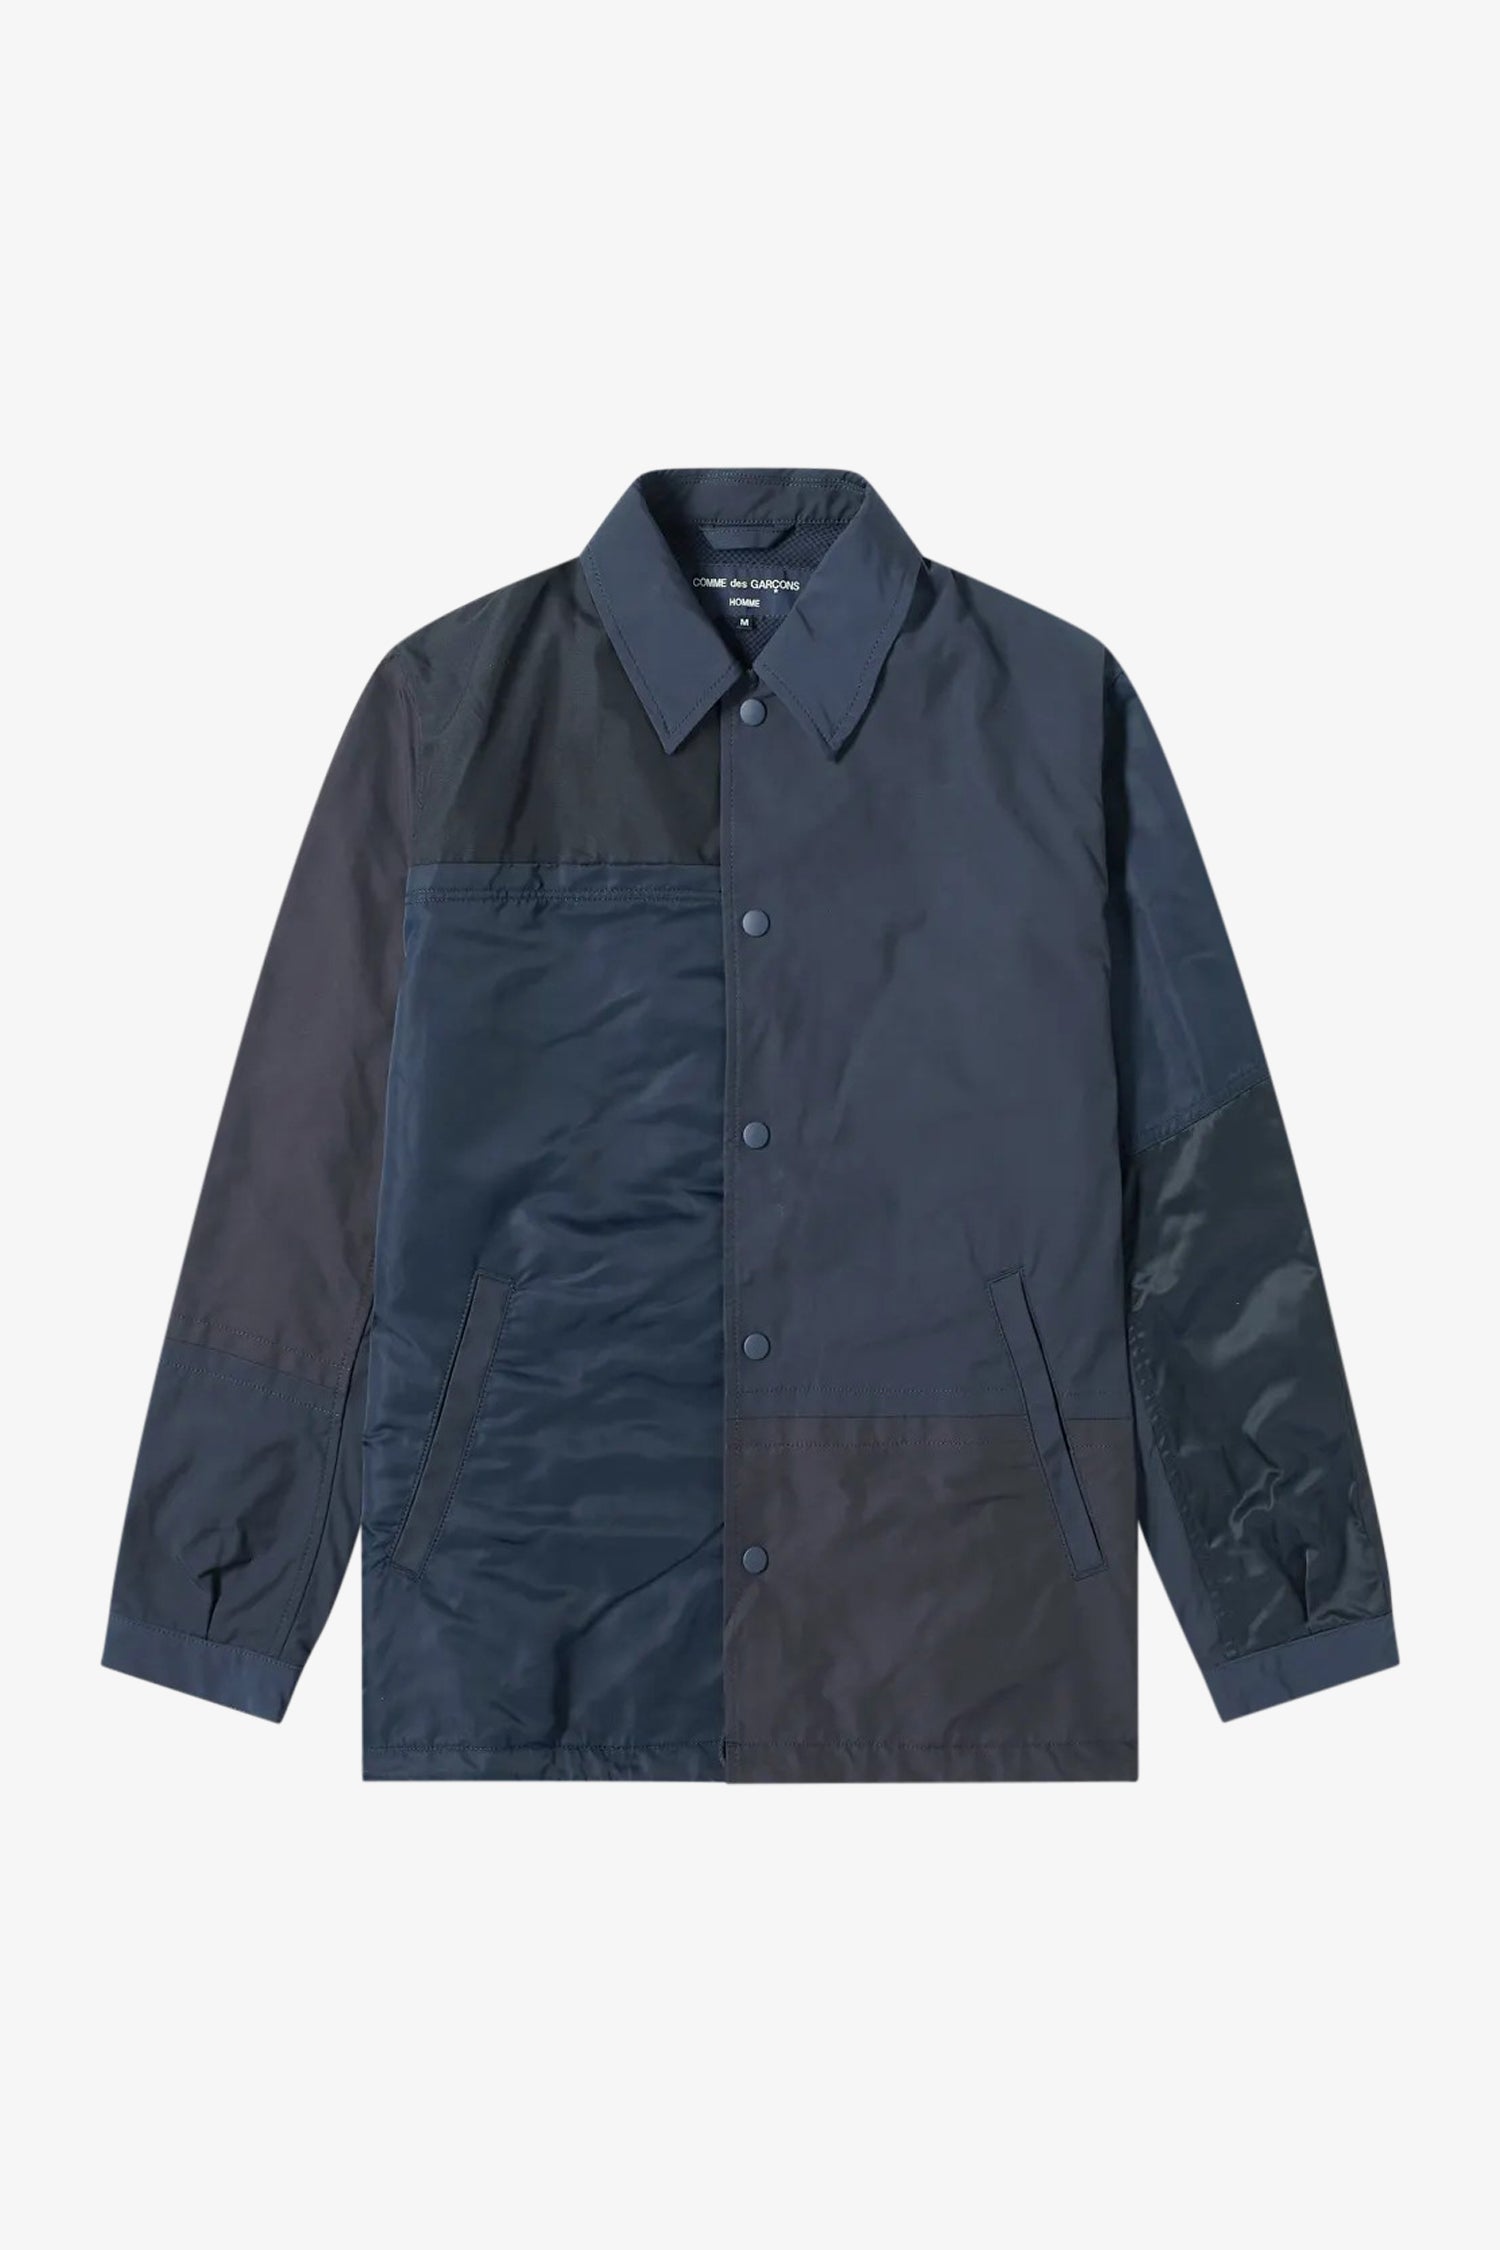 Selectshop FRAME - COMME DES GARÇONS HOMME Mix Nylon Panel Coach Jacket Outerwear Dubai